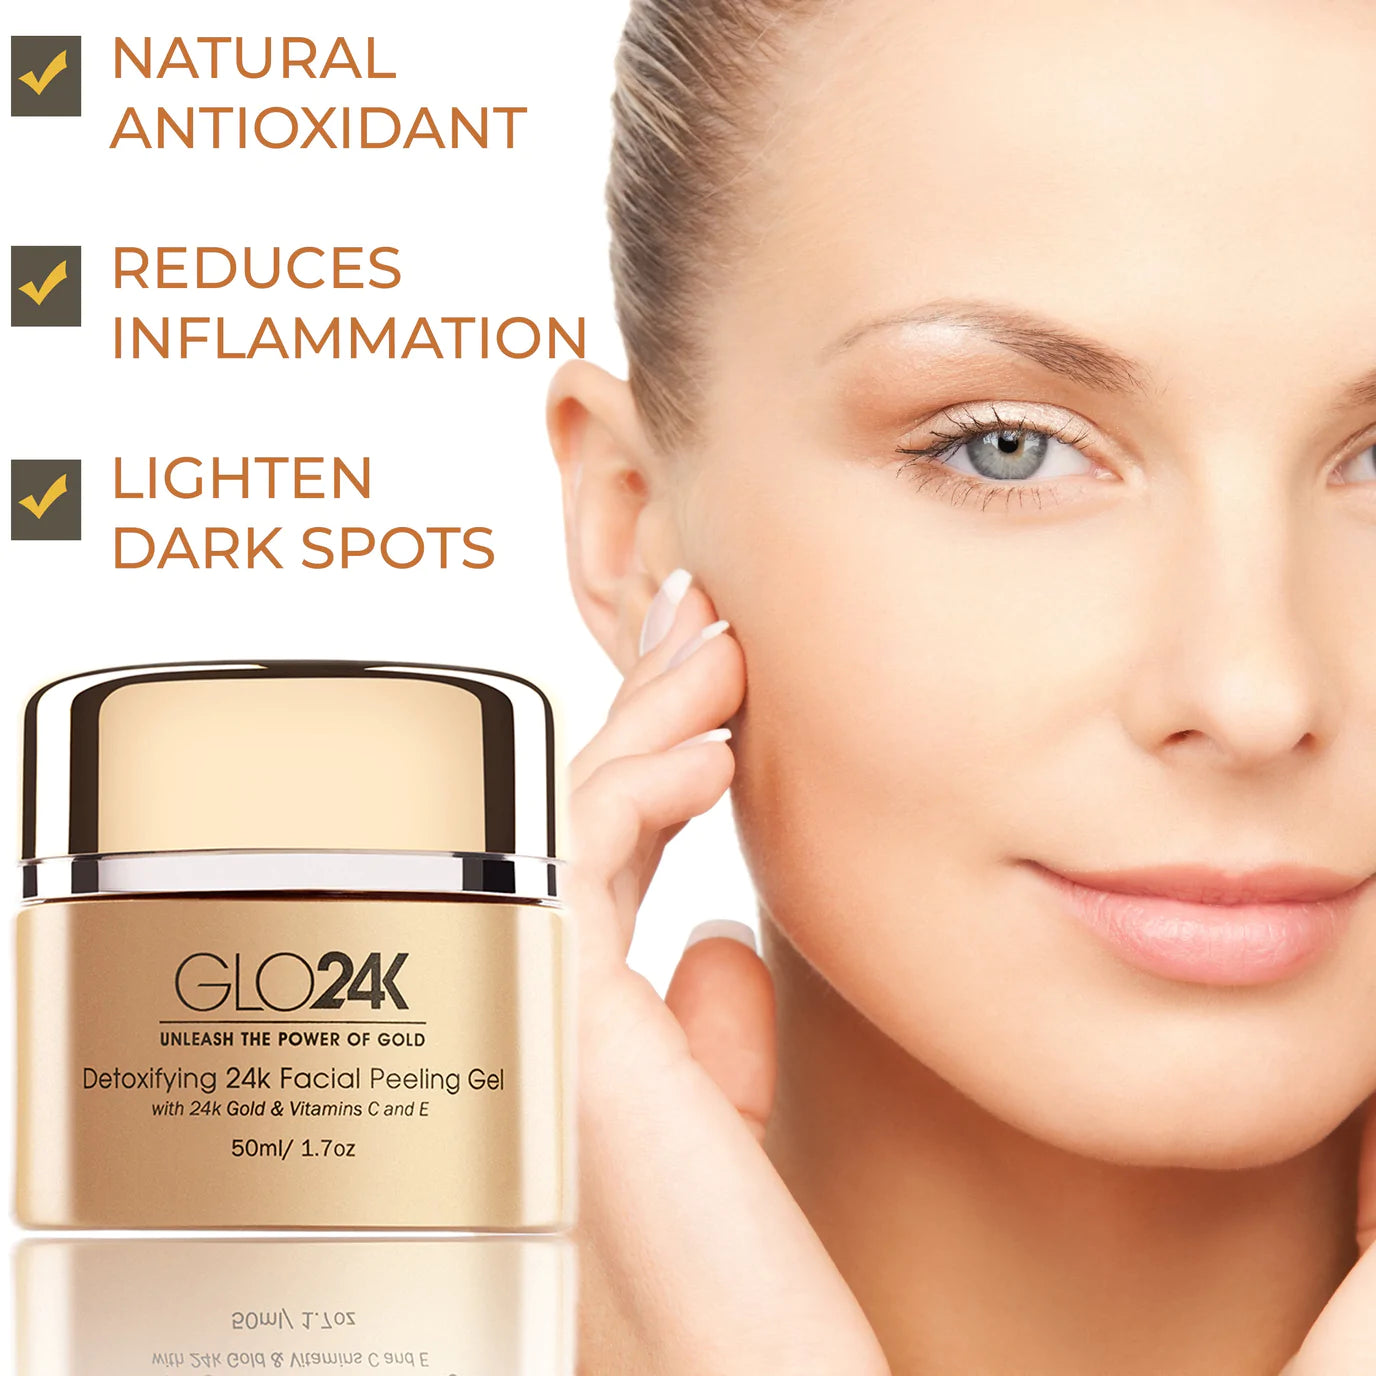 Benefits of GLO24K Detoxifying 24k Facial Peeling Gel